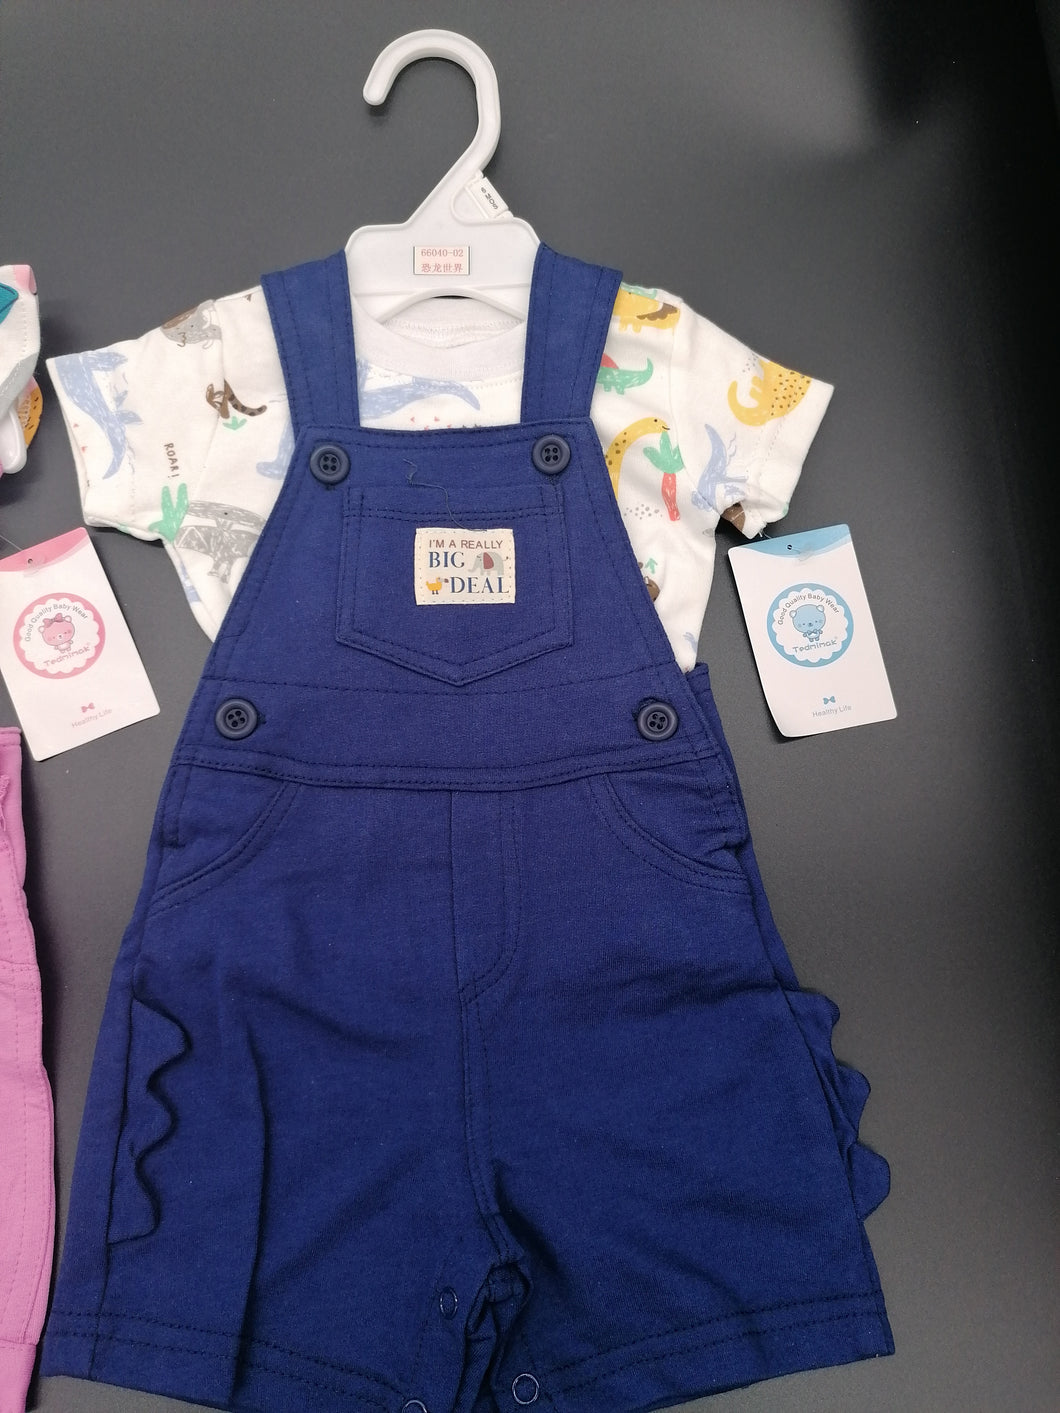 Stylová sada trička a kalhot pro miminko modré nebo růžové velikosti 6 měsíců-2 roky